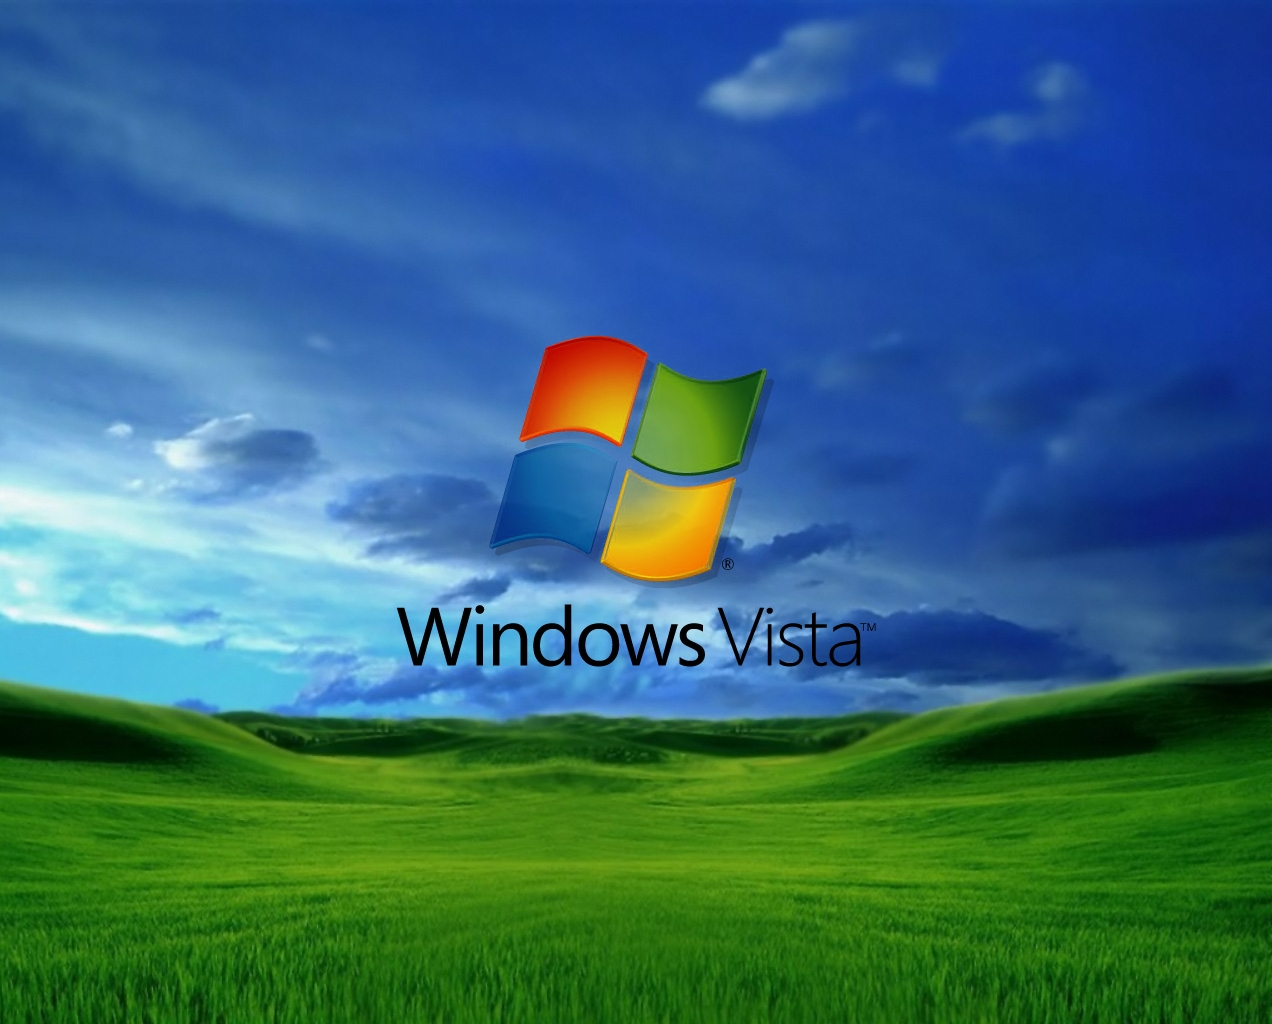 Fond écran Windows Vista et Windows 7 gratuit à télécharger